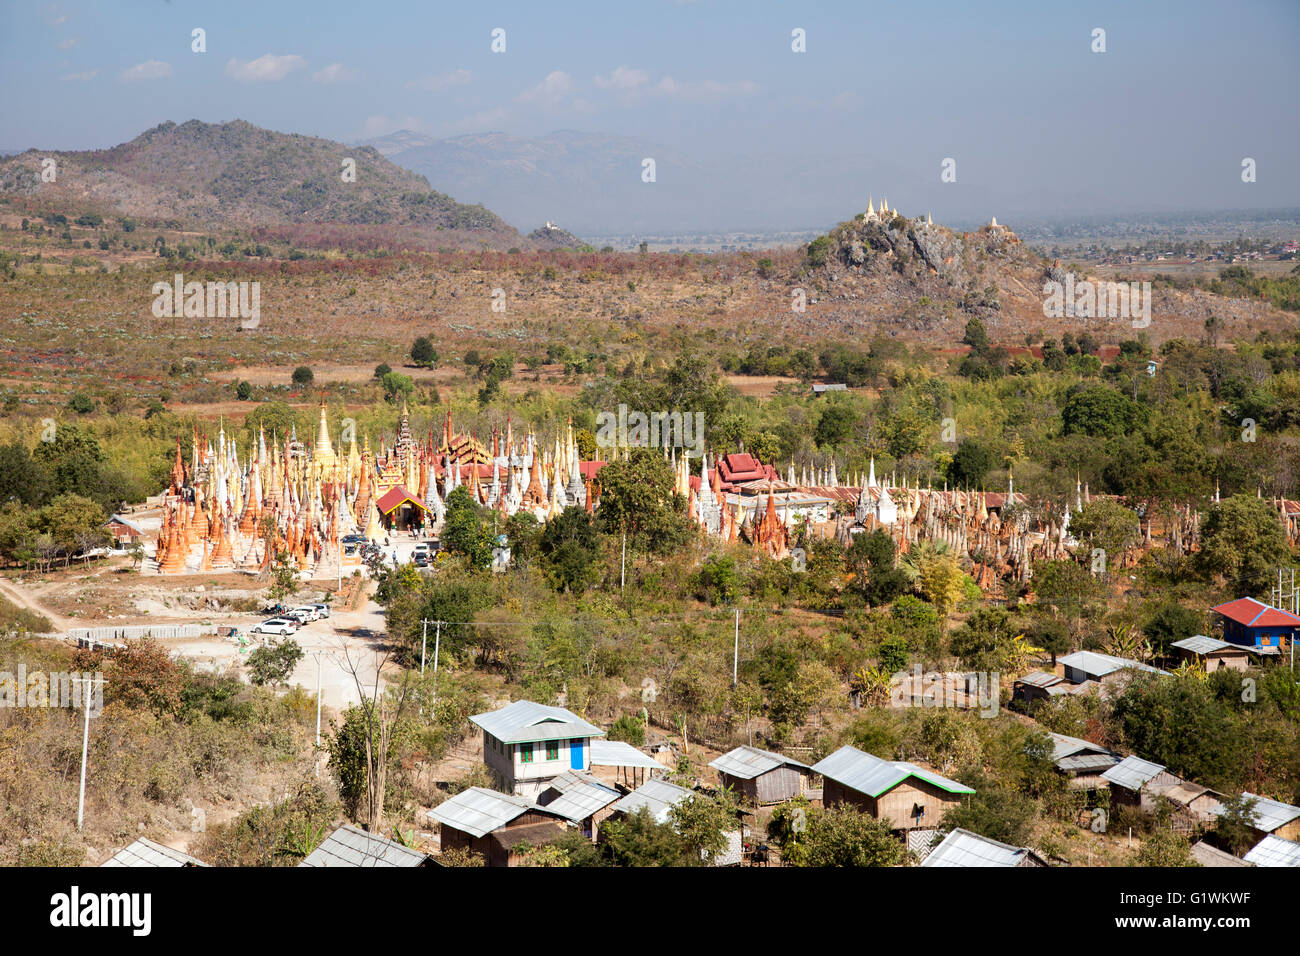 Il villaggio di Inthein a sud ovest del Lago Inle con la sua massa di pagode appuntita (Myanmar). Inthein, Près du lac Inlé. Foto Stock